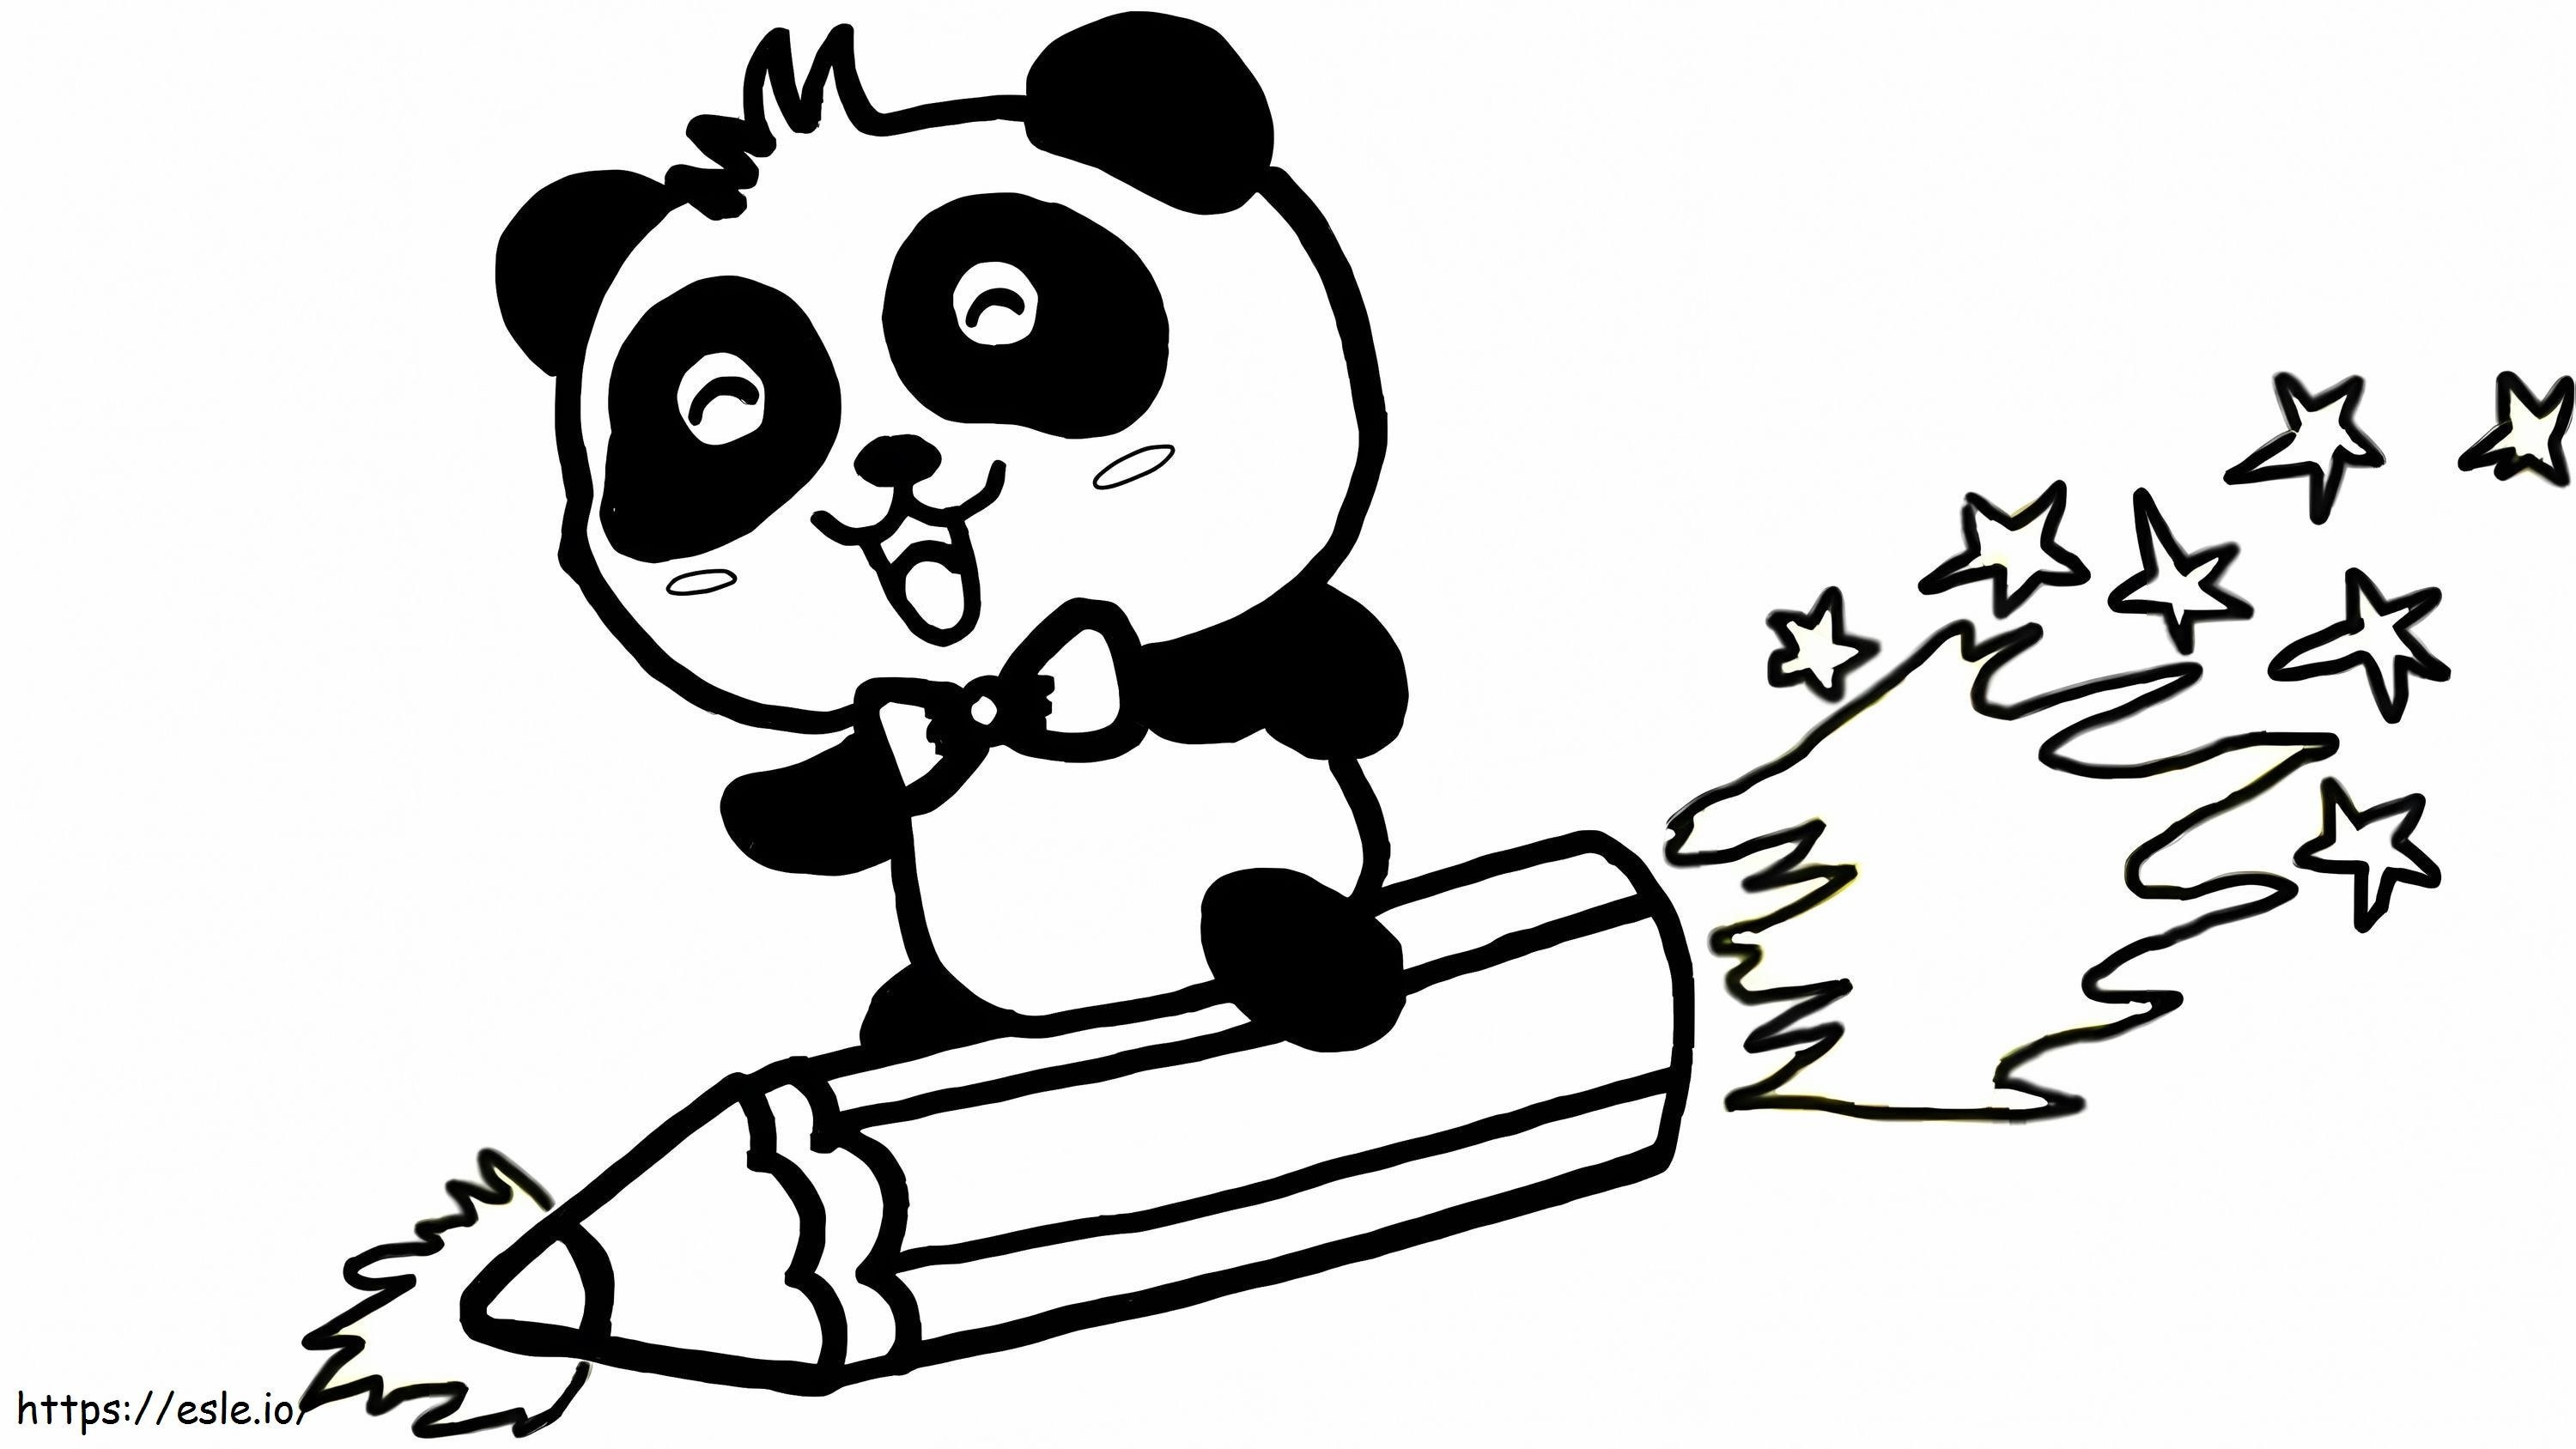 Coloriage Panda avec fusée crayon à imprimer dessin